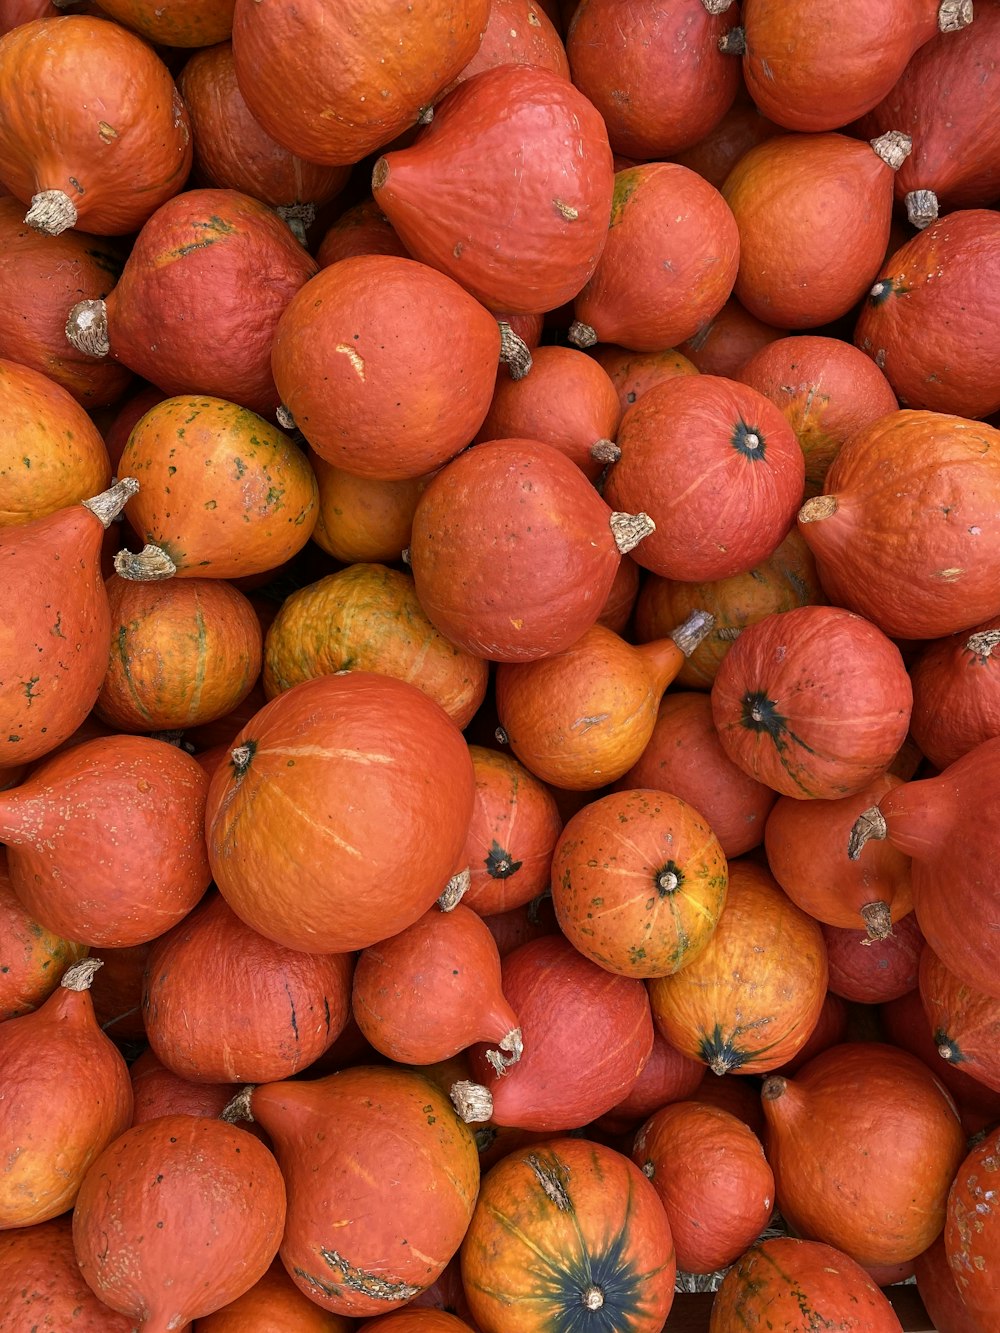 a pile of peaches